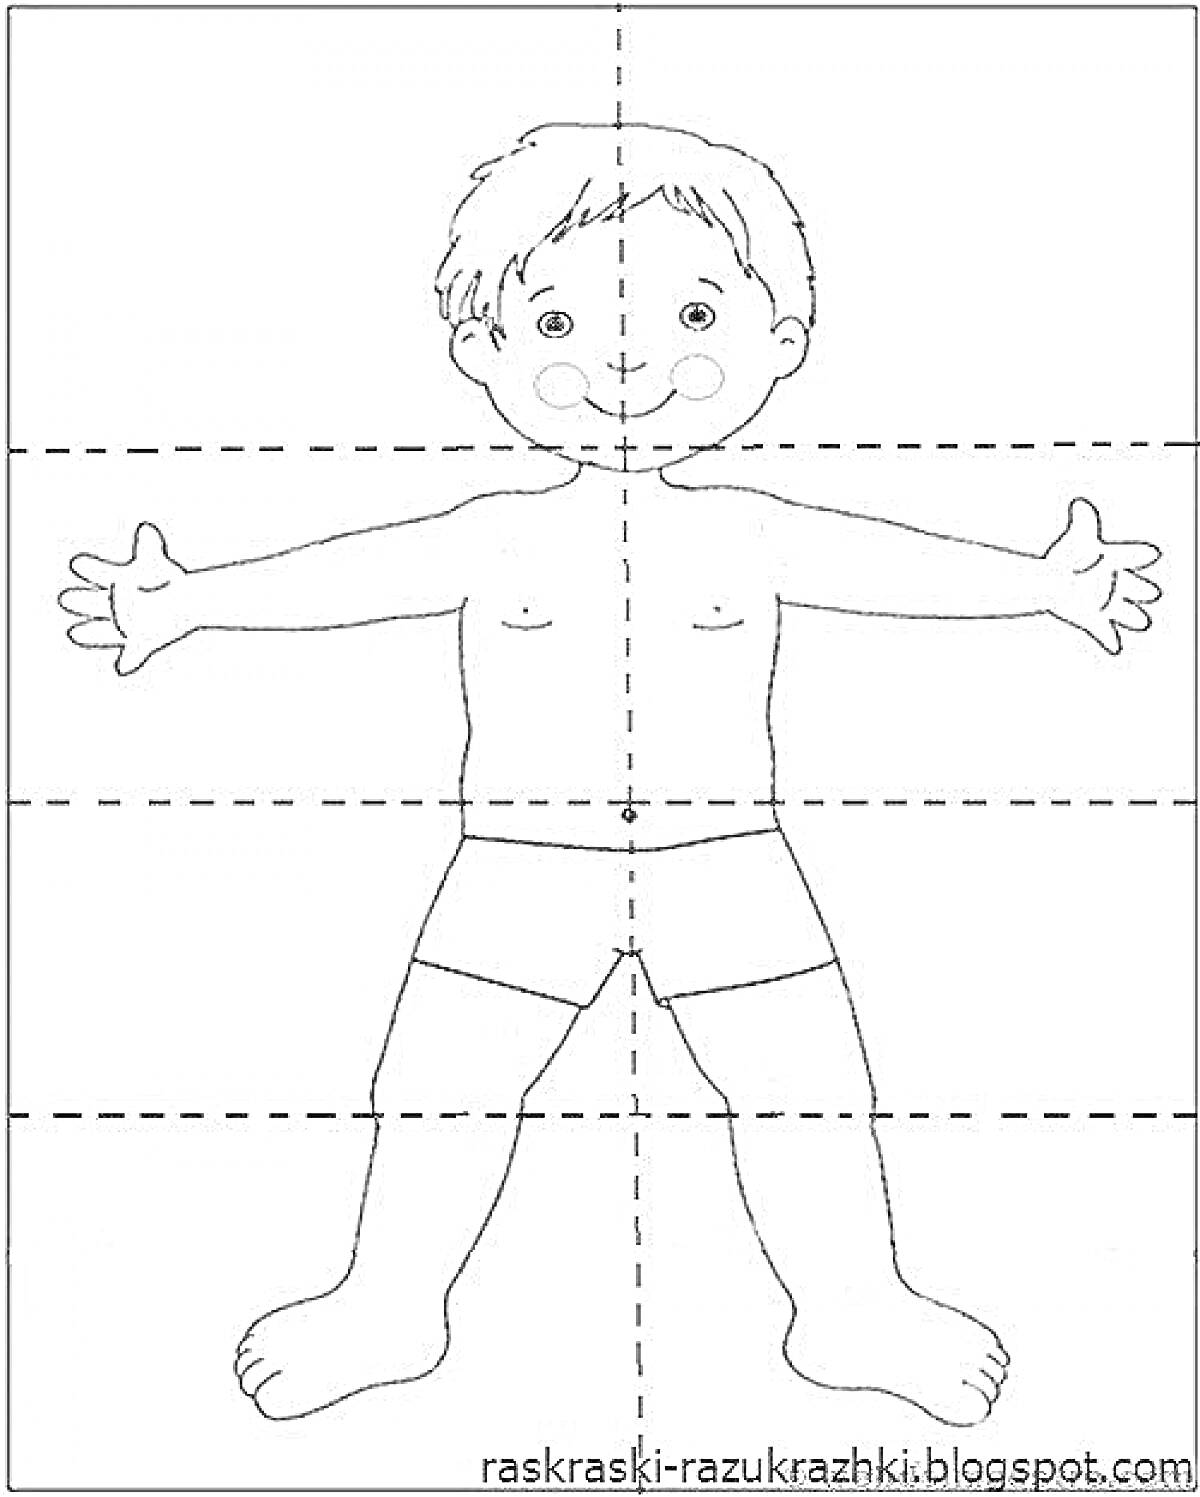 Раскраска Раскраска с изображением мальчика, с элементами: голова, волосы, глаза, рот, уши, щеки, руки, пальцы, тело, ноги, ступни, трусы.